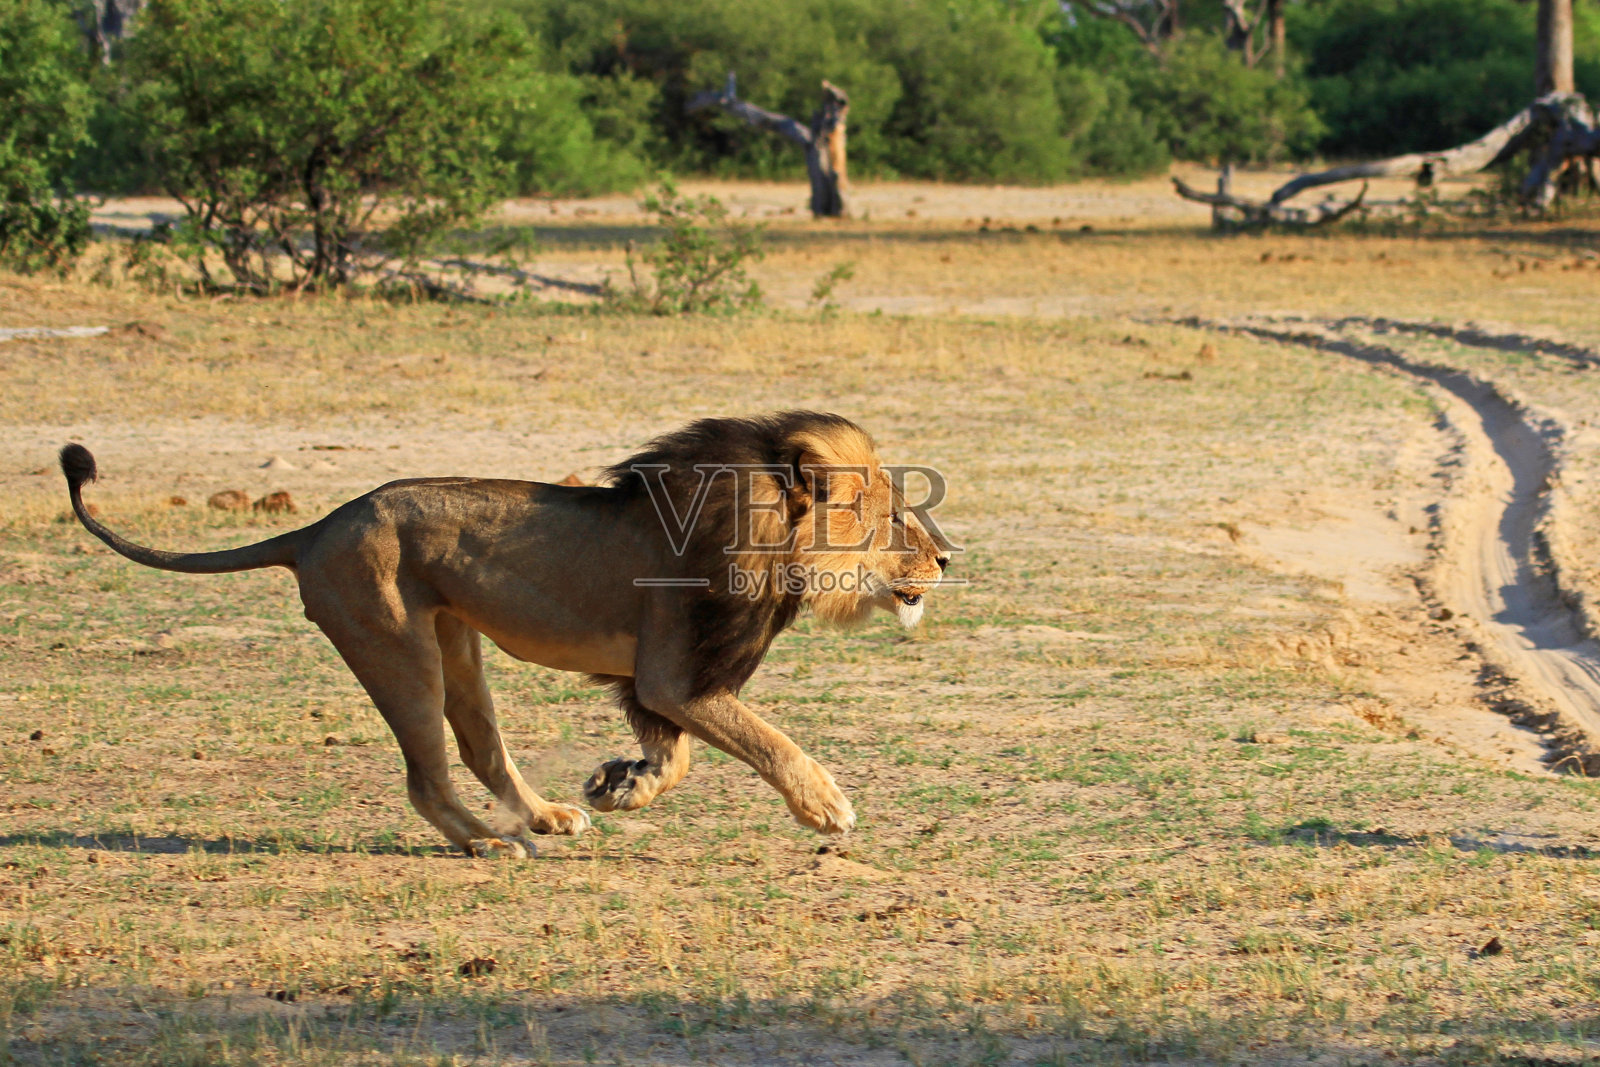 塞西尔是横穿非洲平原的狮子照片摄影图片